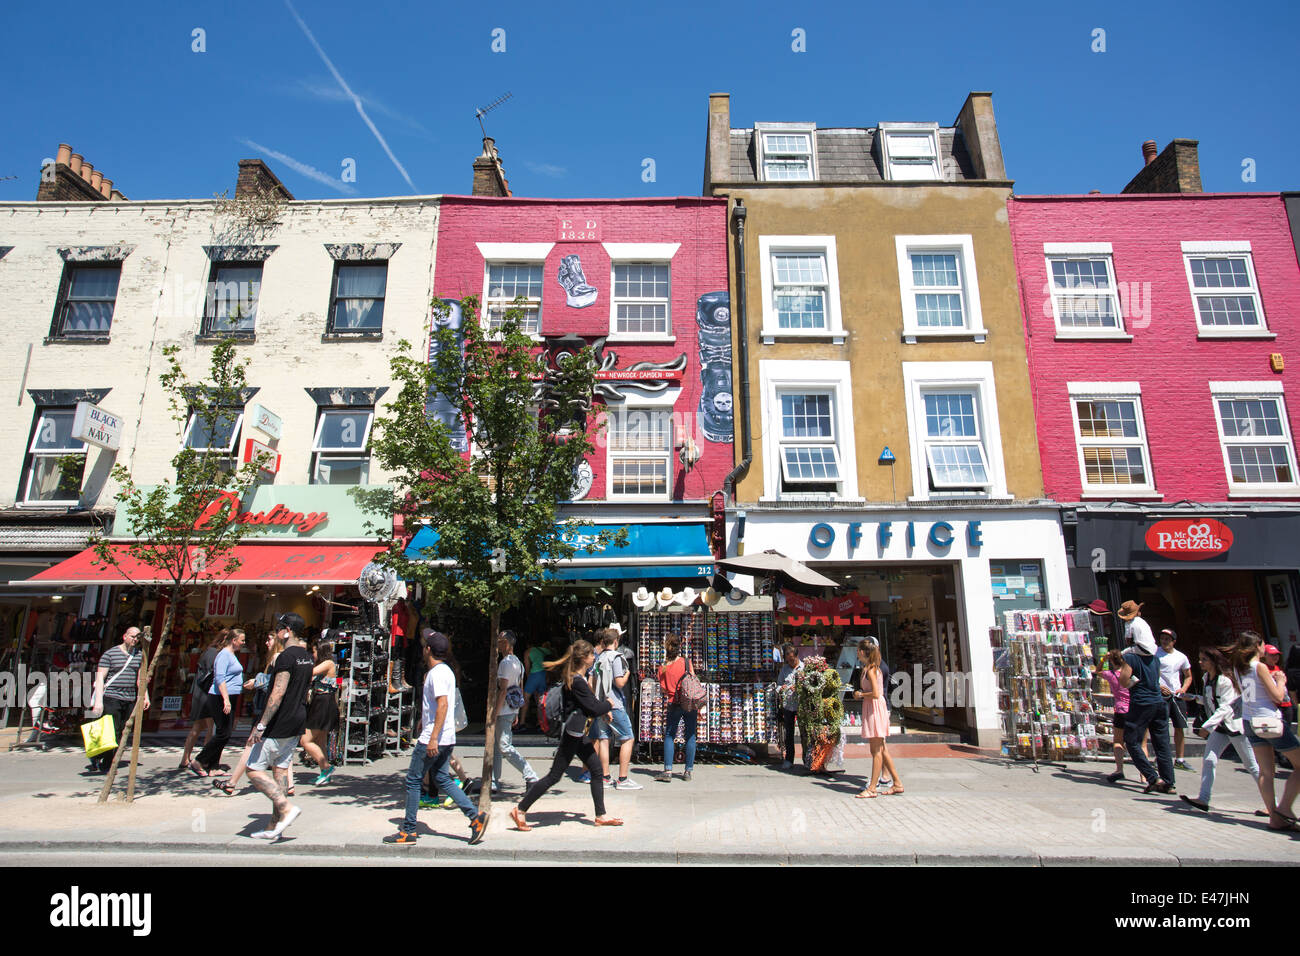 Camden High Street, Camden Town, London Borough of Camden, London, England, UK Stock Photo